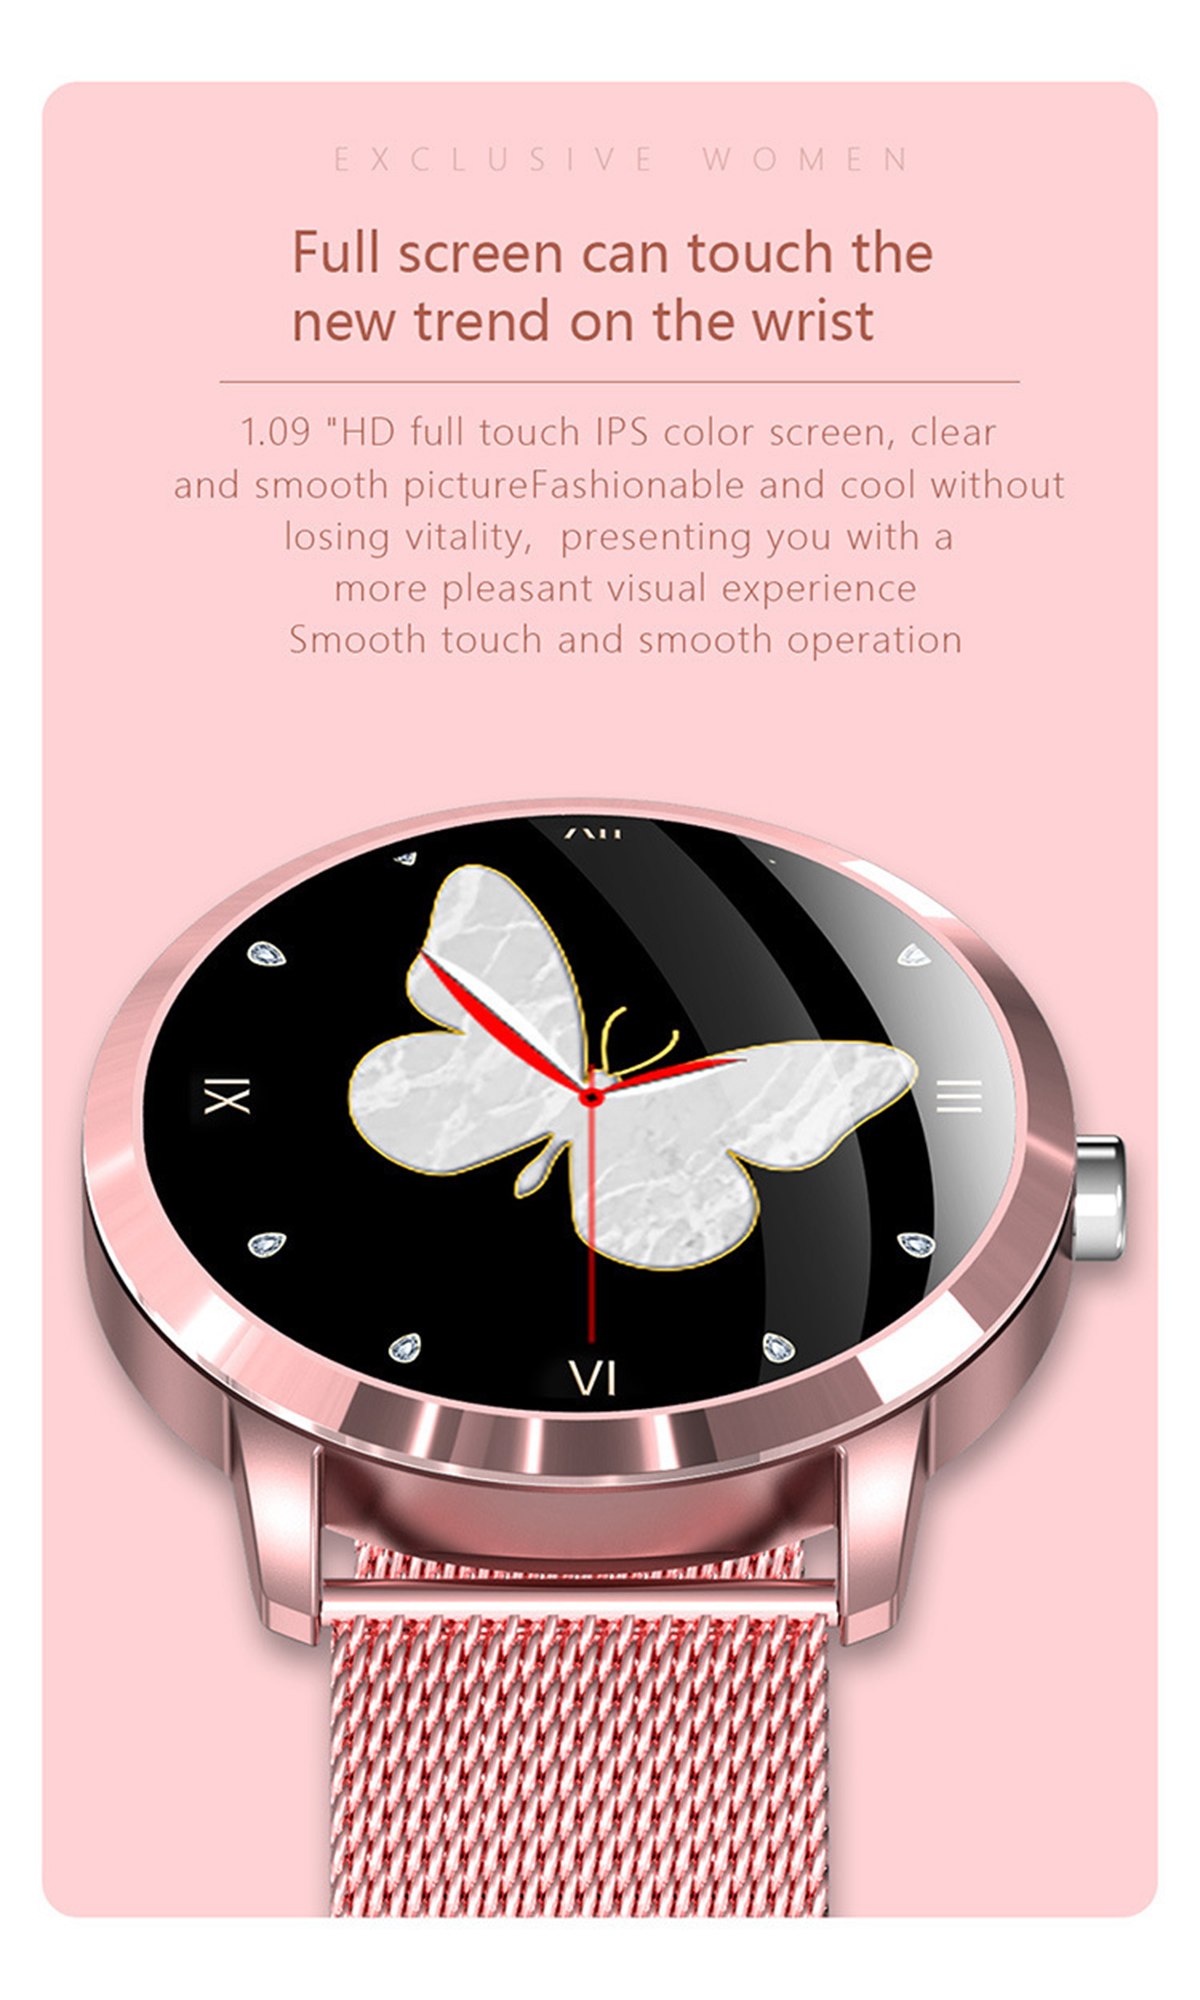 mit Smartwatch Stähle, Smartwatch Herzfrequenzmessung Rosa & rostfreie BRIGHTAKE Blutdrucküberwachung